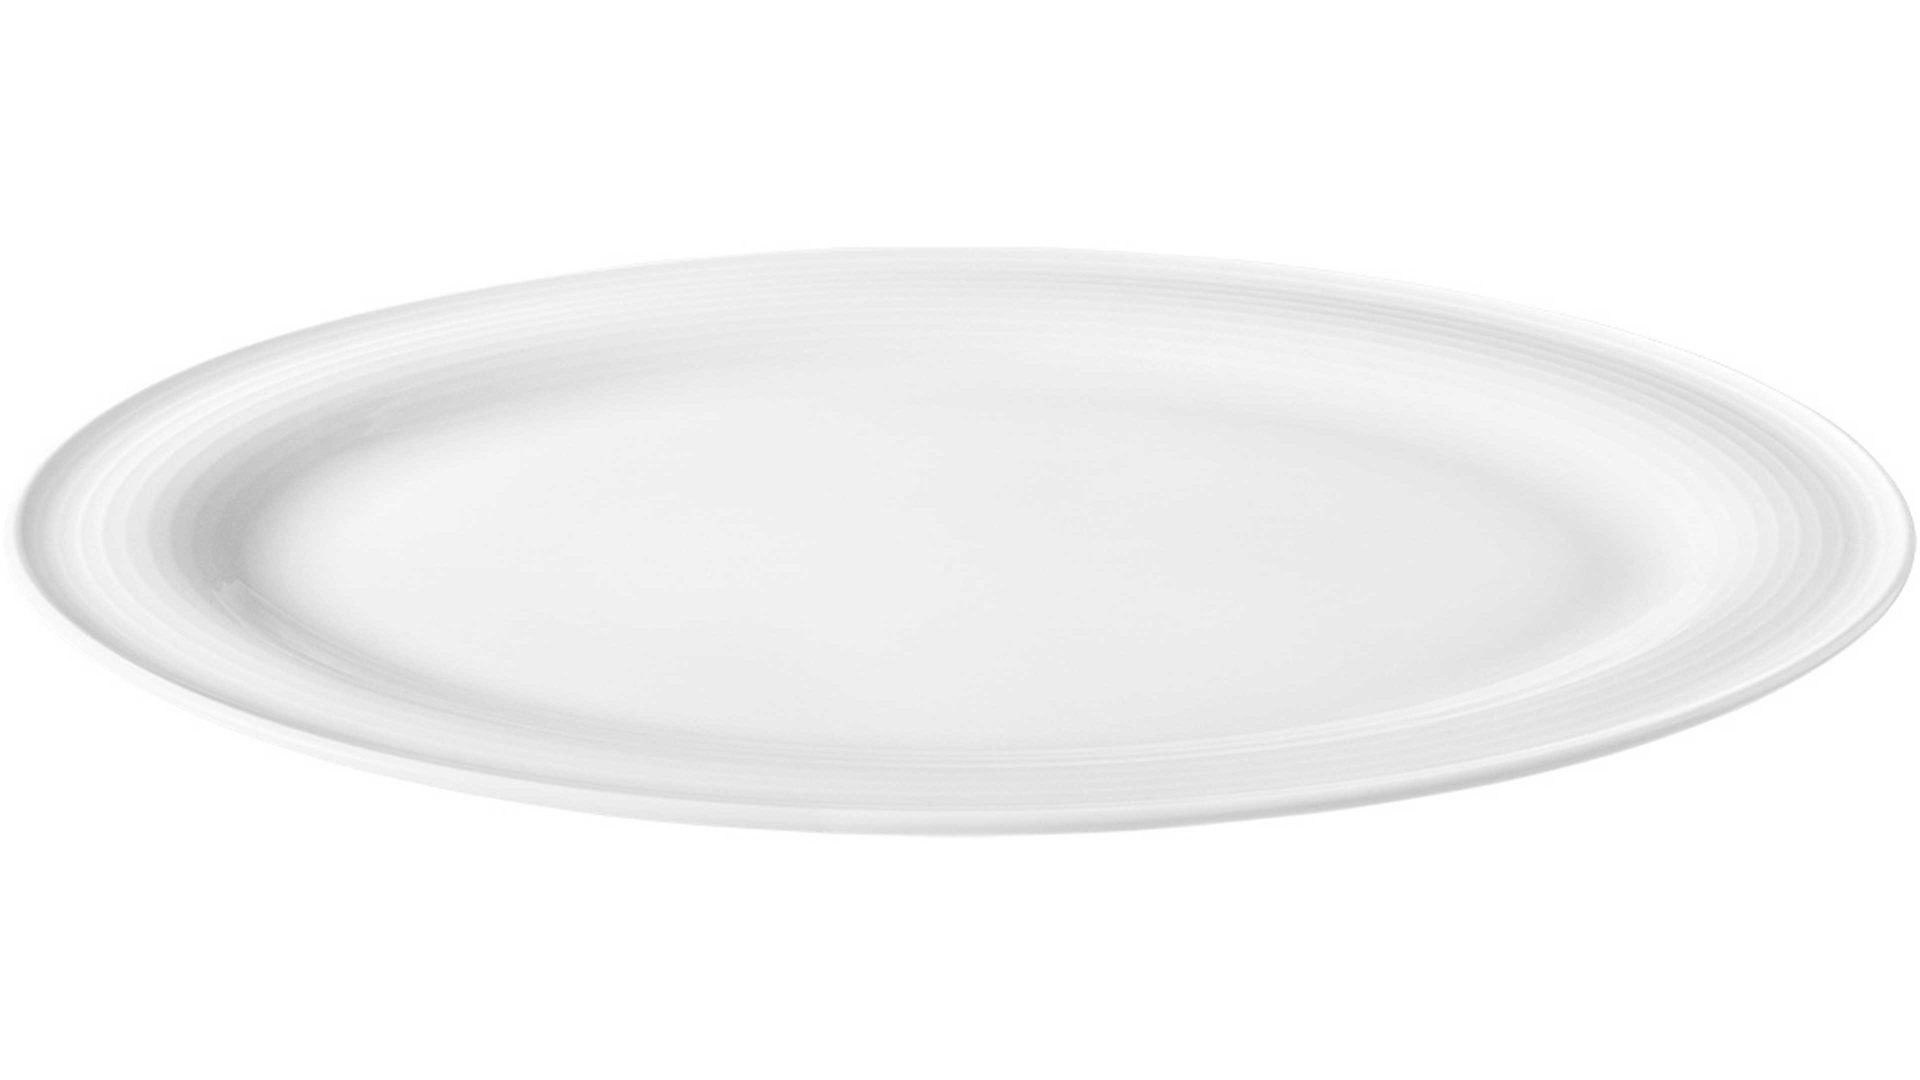 Servierplatte Seltmann aus Porzellan in Weiß Seltmann Geschirrserie Beat 3 – Servierplatte weißes Porzellan – ca. 31 x 24 cm